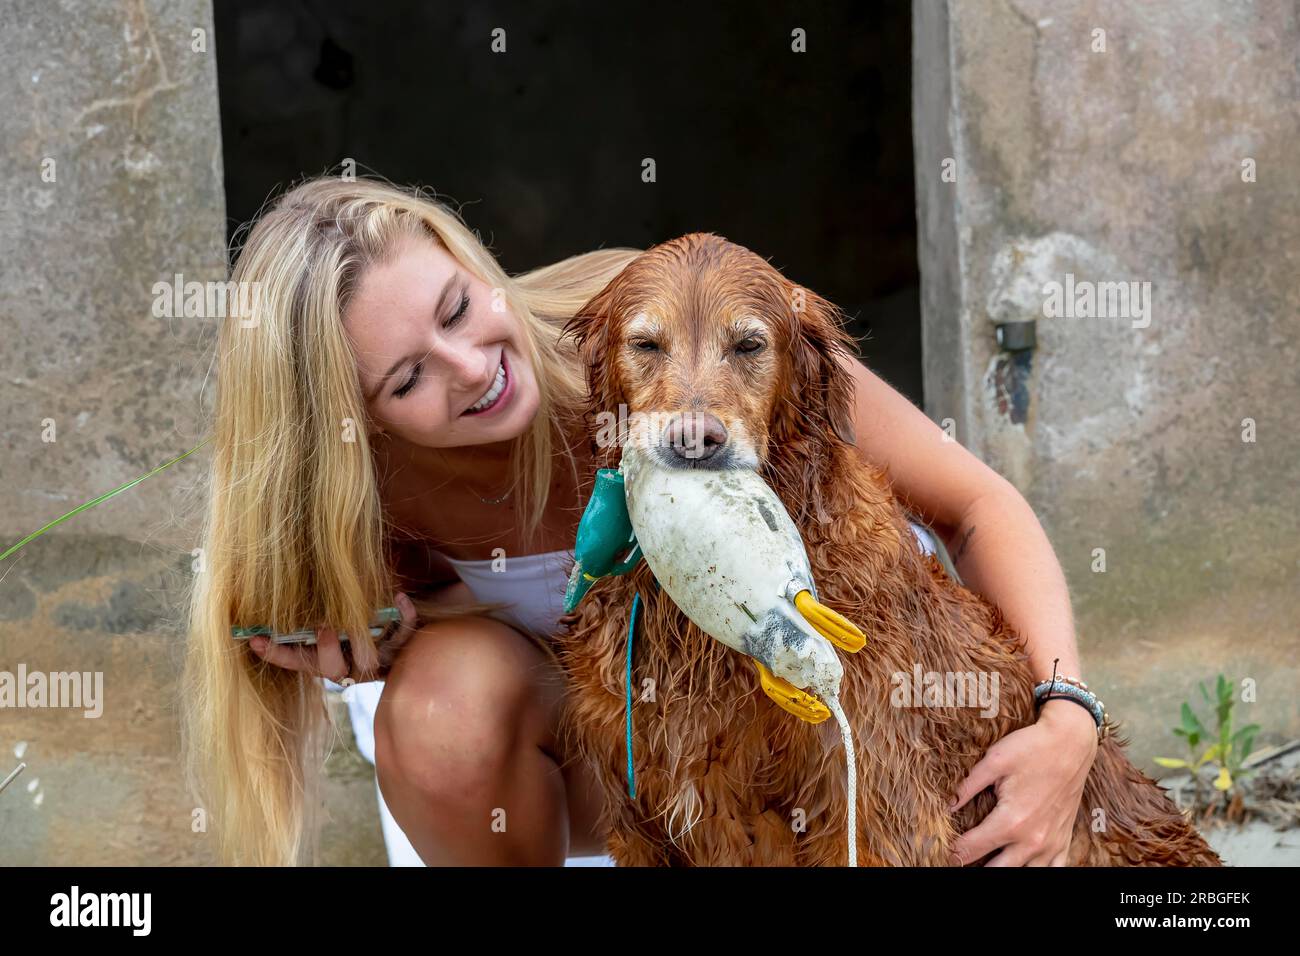 Ein hübsches blondes Model, das mit ihrem Hund posiert Stockfoto